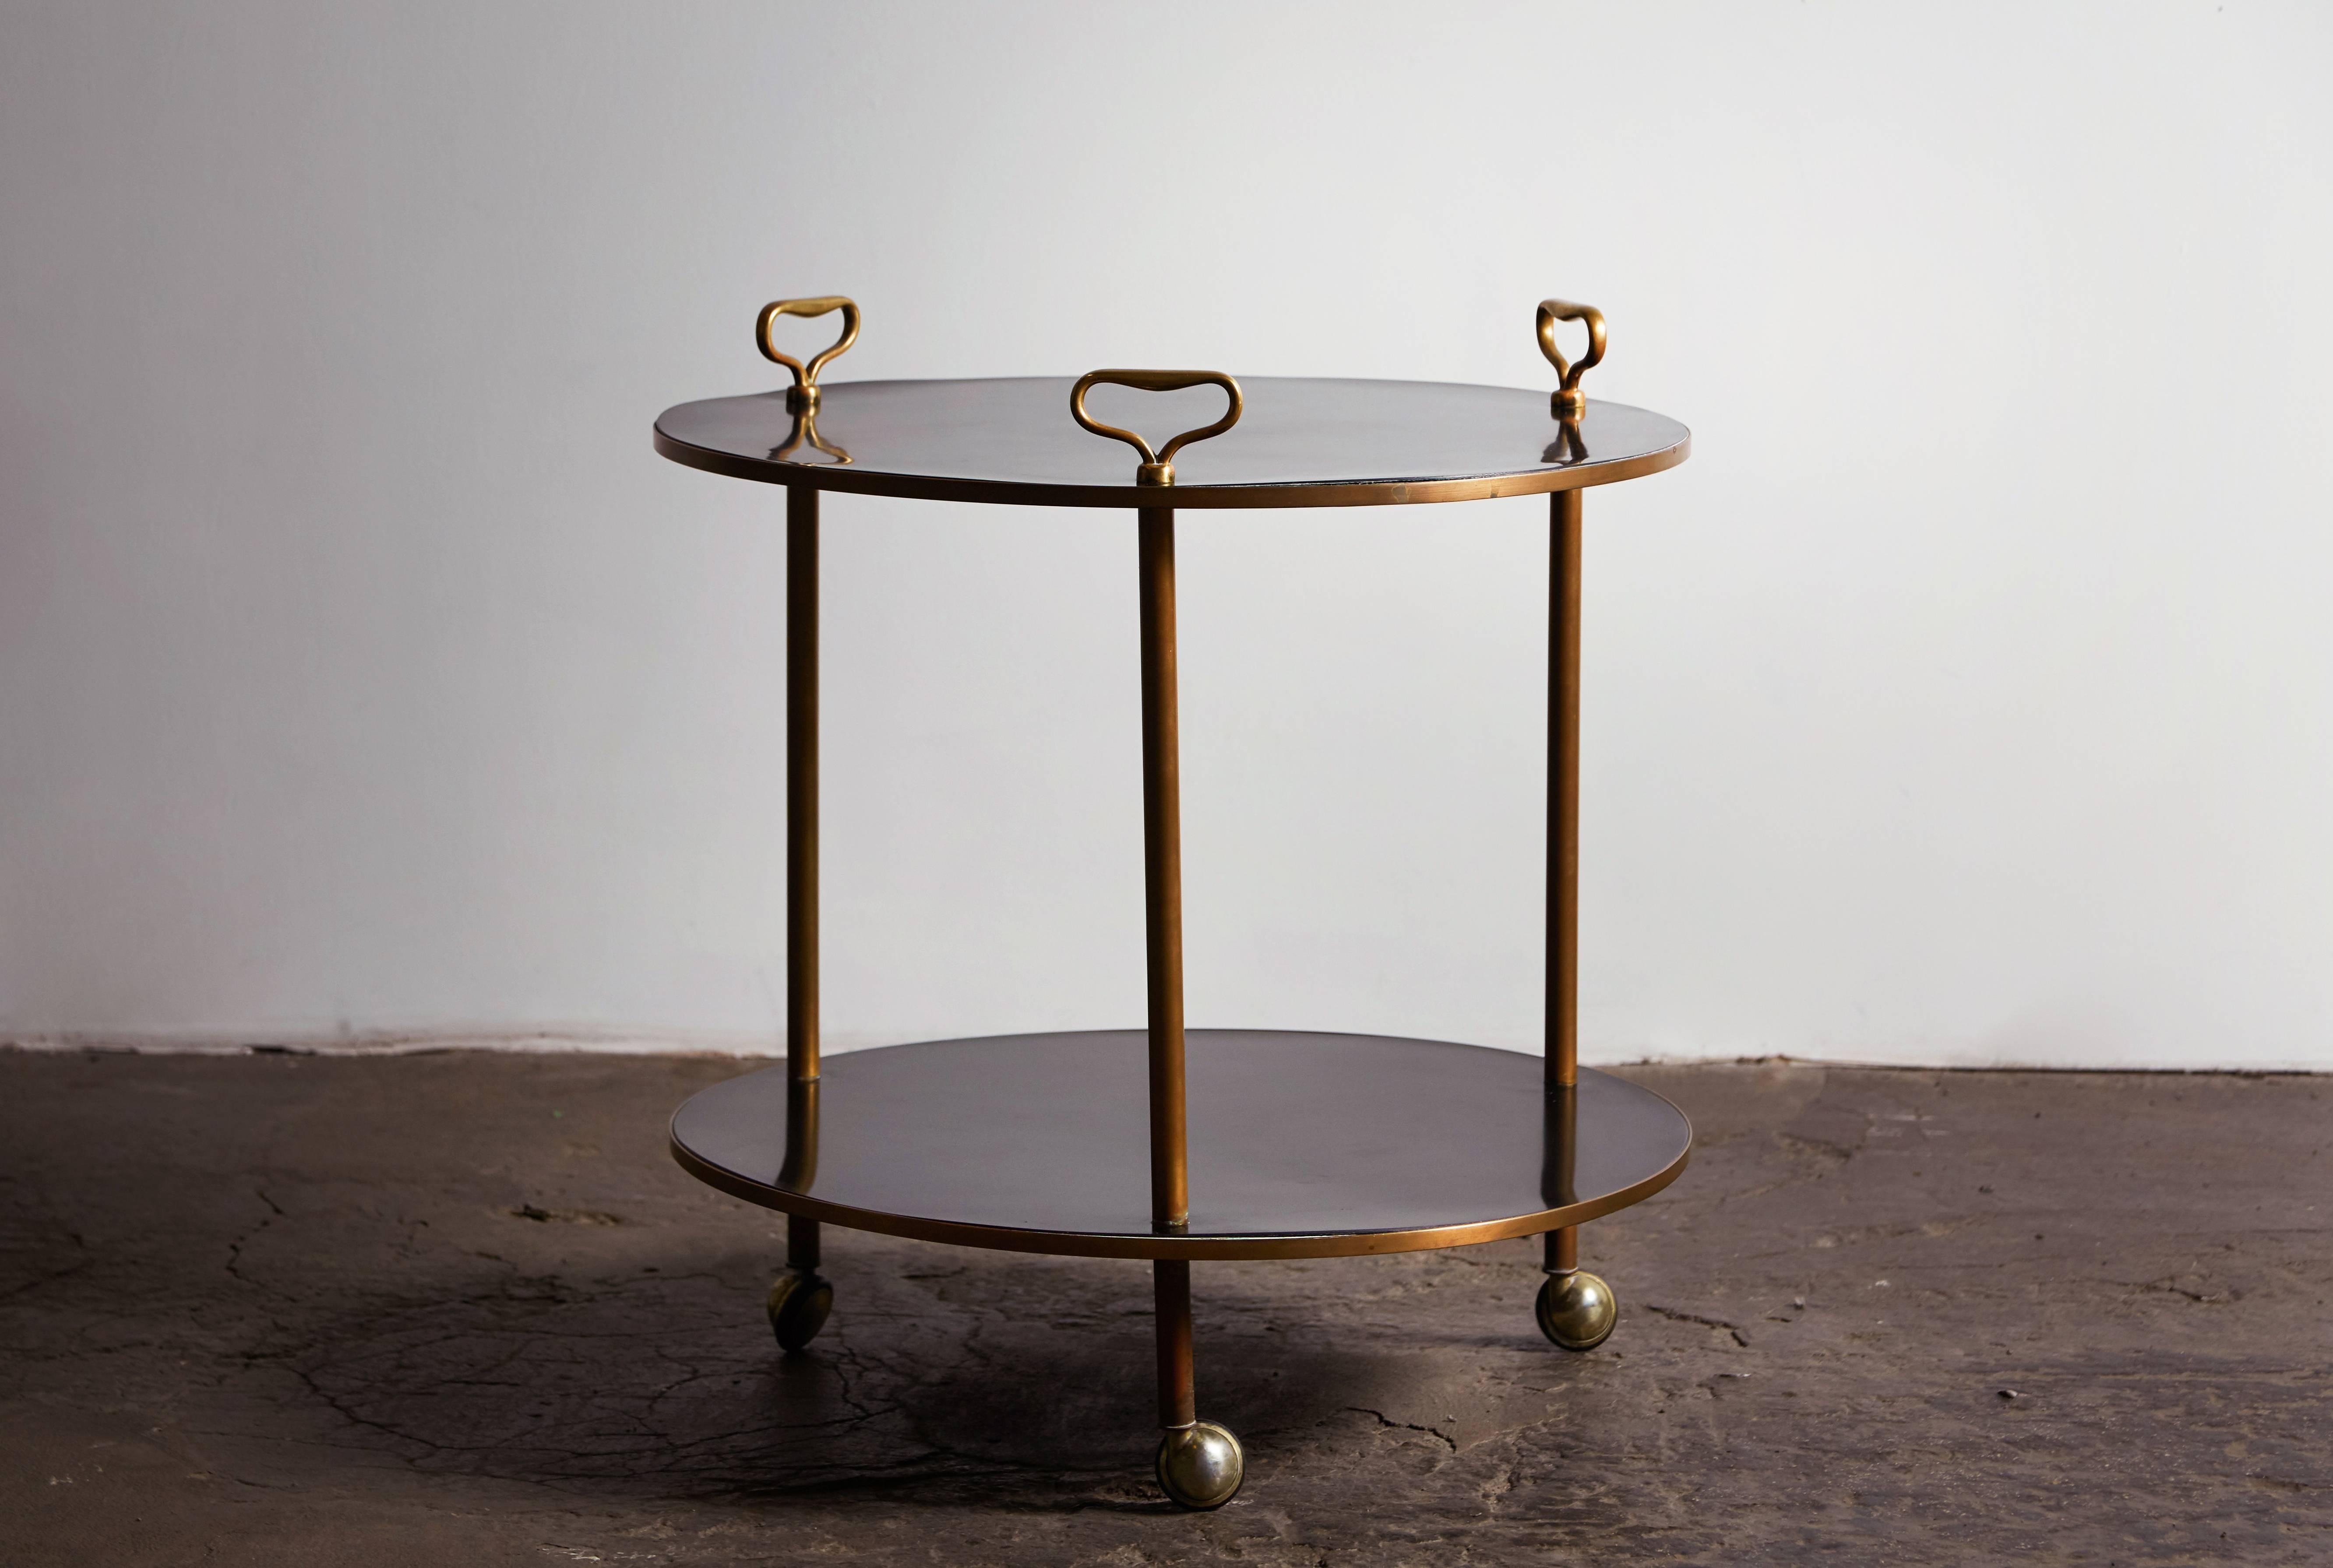 Rare brass and laminate two-tier rolling table by Corrado Corradi Dell’Acqua for Azucena. Made in Italy, circa 1953.